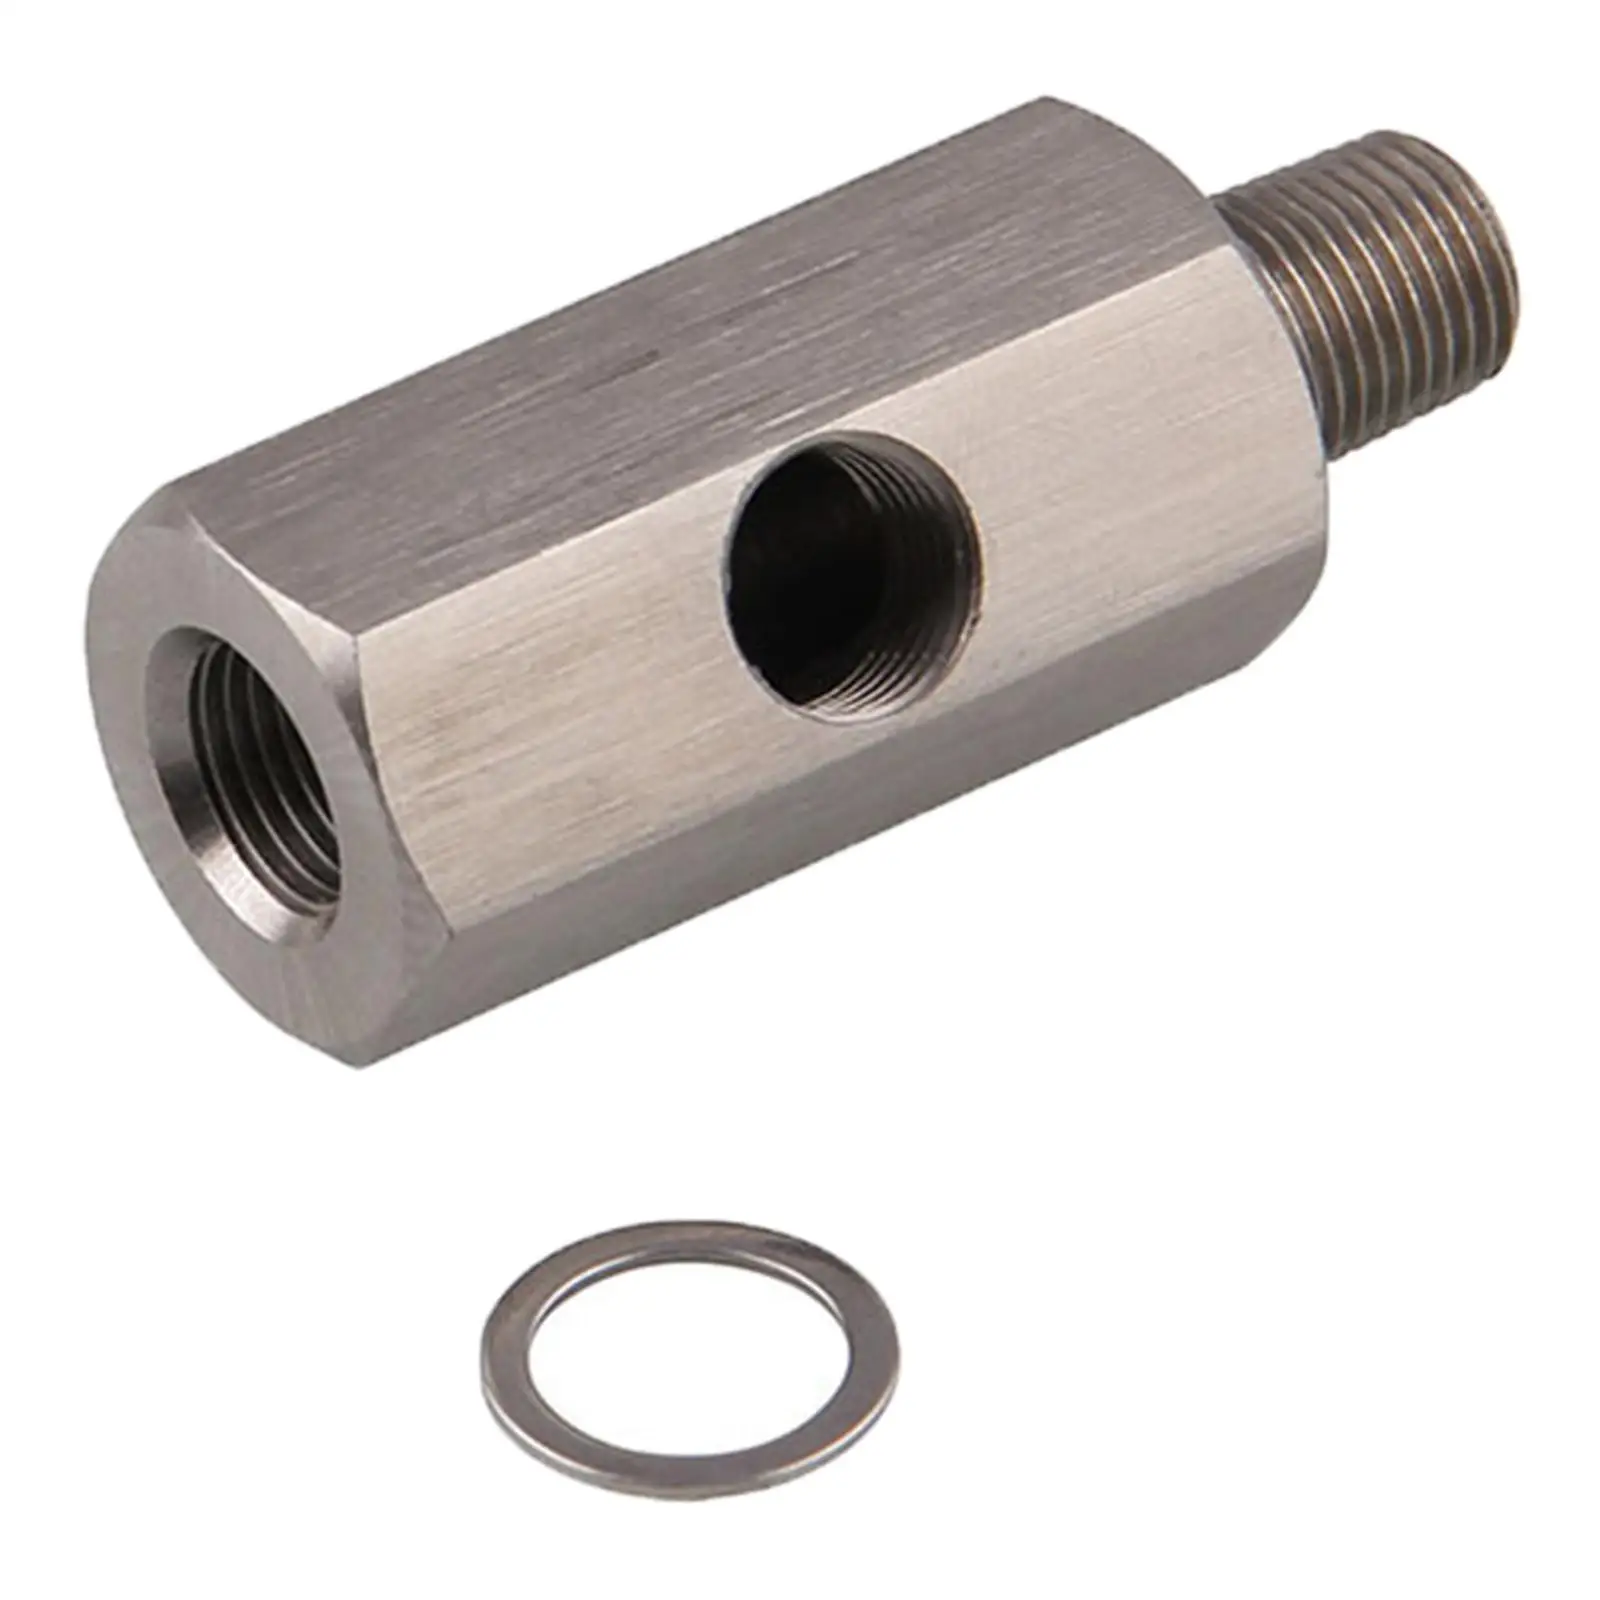 Oil Pressure Sensor /8``Npt Adapter Stainless Steel High Performance